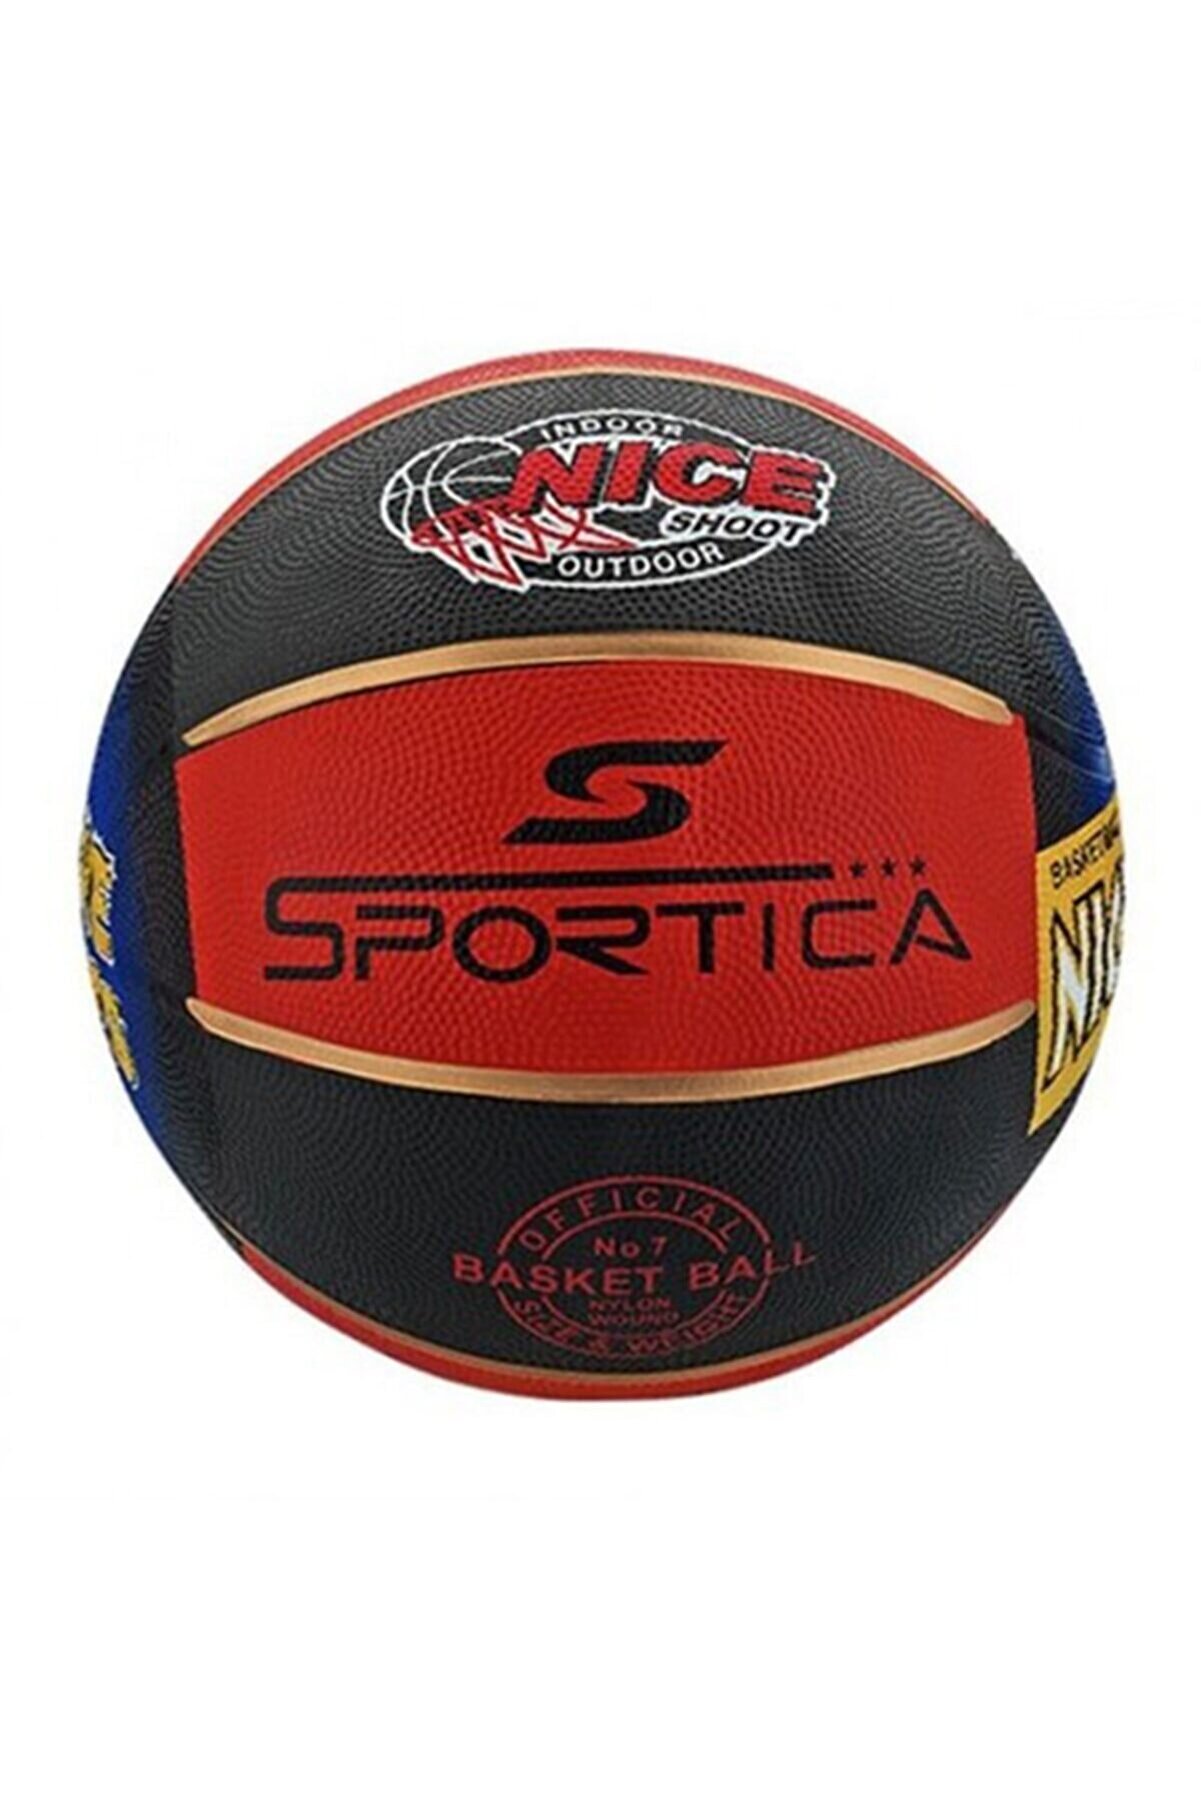 ALTIS Sportica Bb200r Basketbol Topu No:7 7